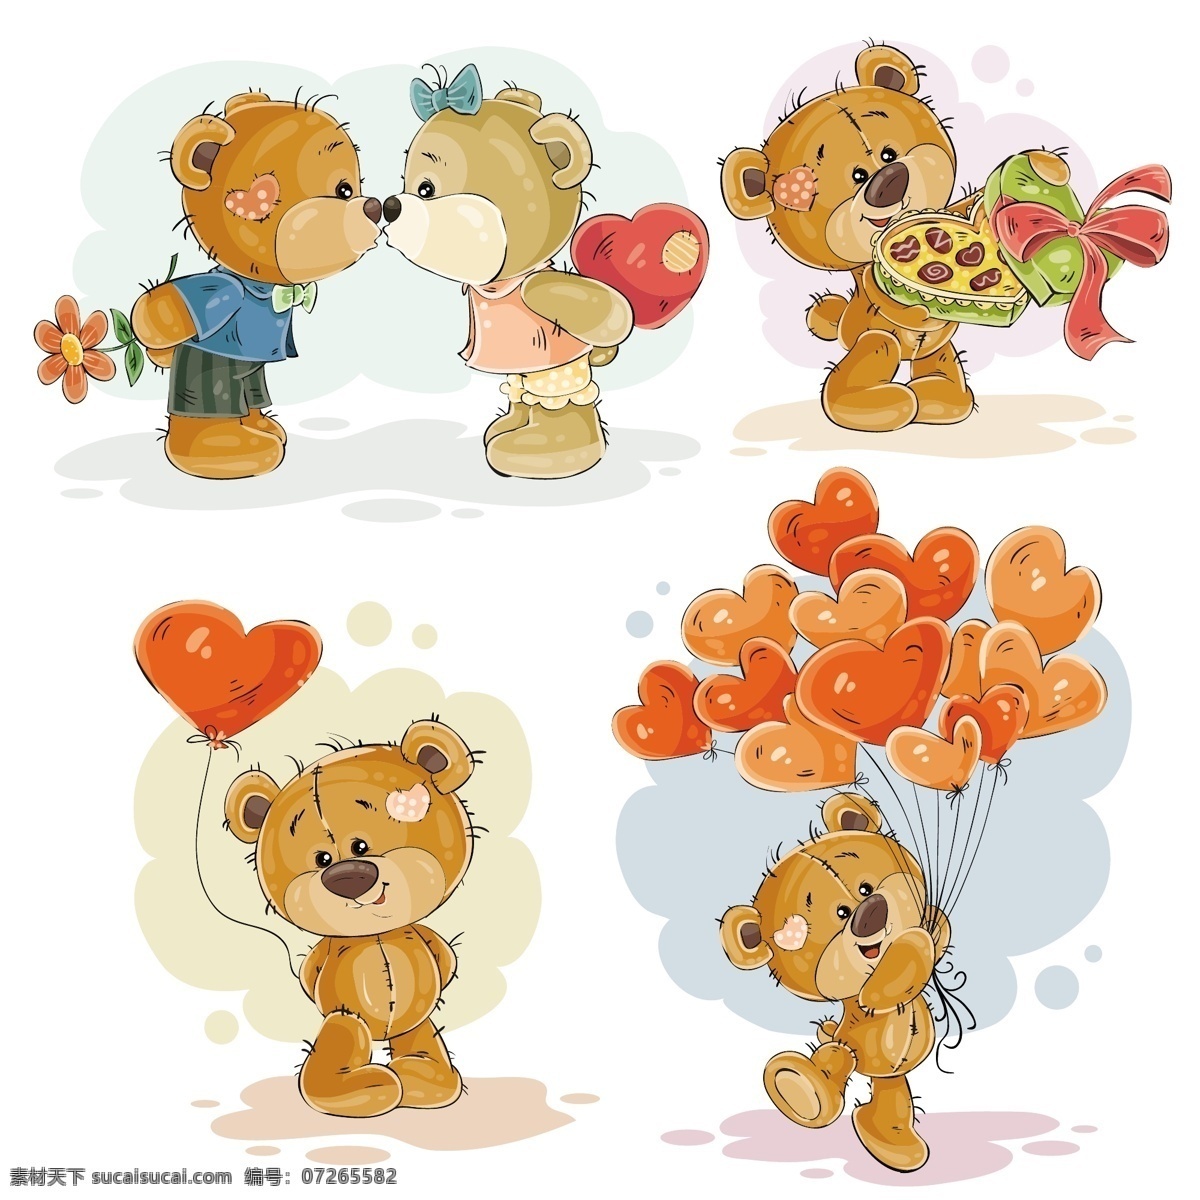 集 矢量 剪贴 画 插图 迷恋 泰迪 熊 标签 婴儿 心脏 书籍 爱情 礼物 图标 卡通 动物 漫画 可爱 情人节 艺术 糖果 度假 气球 标志 夫妇